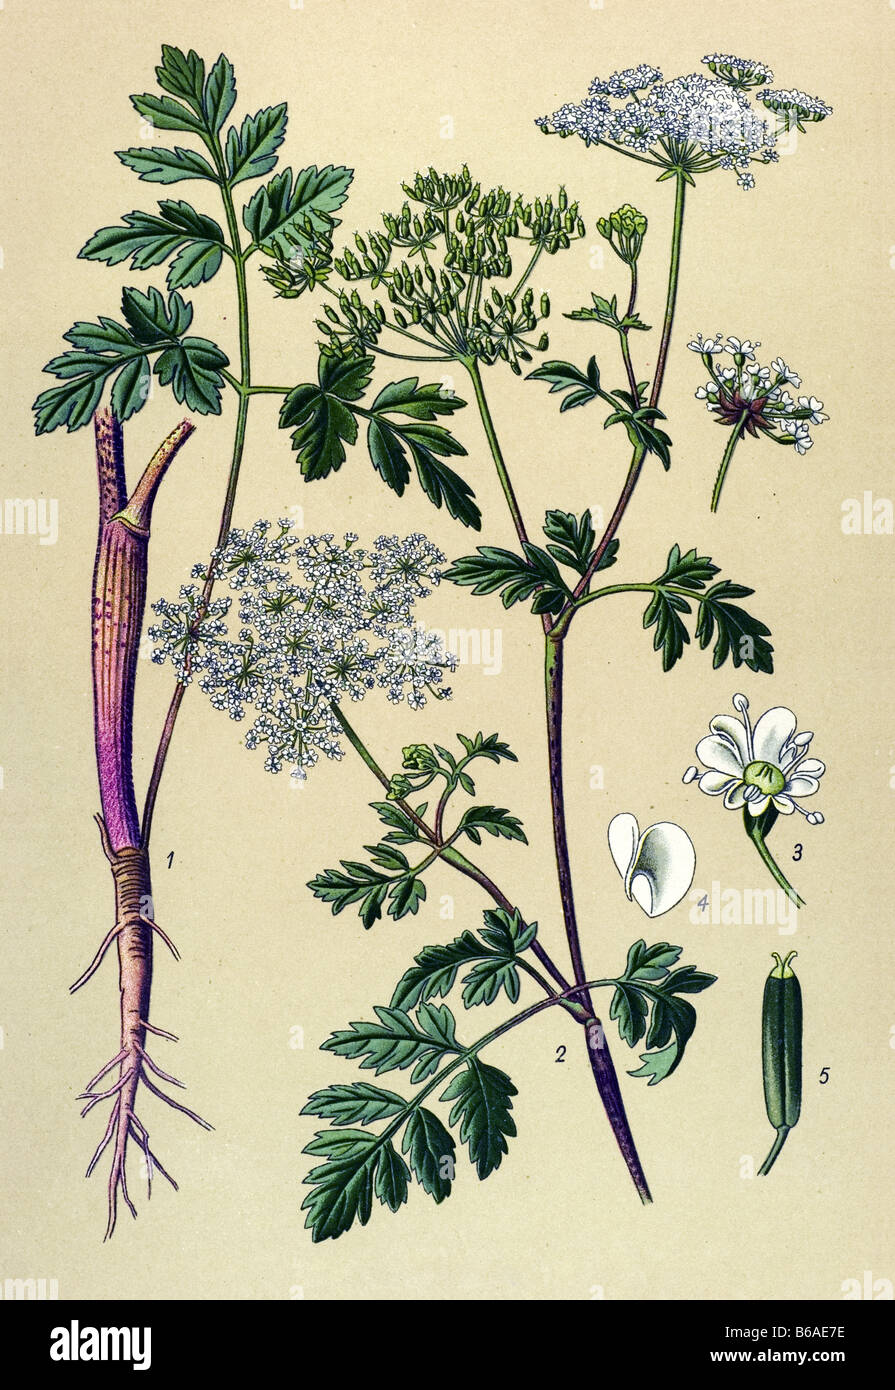 Rough Chervil, Chaerophyllum temulum poisonous plants illustrations Stock Photo